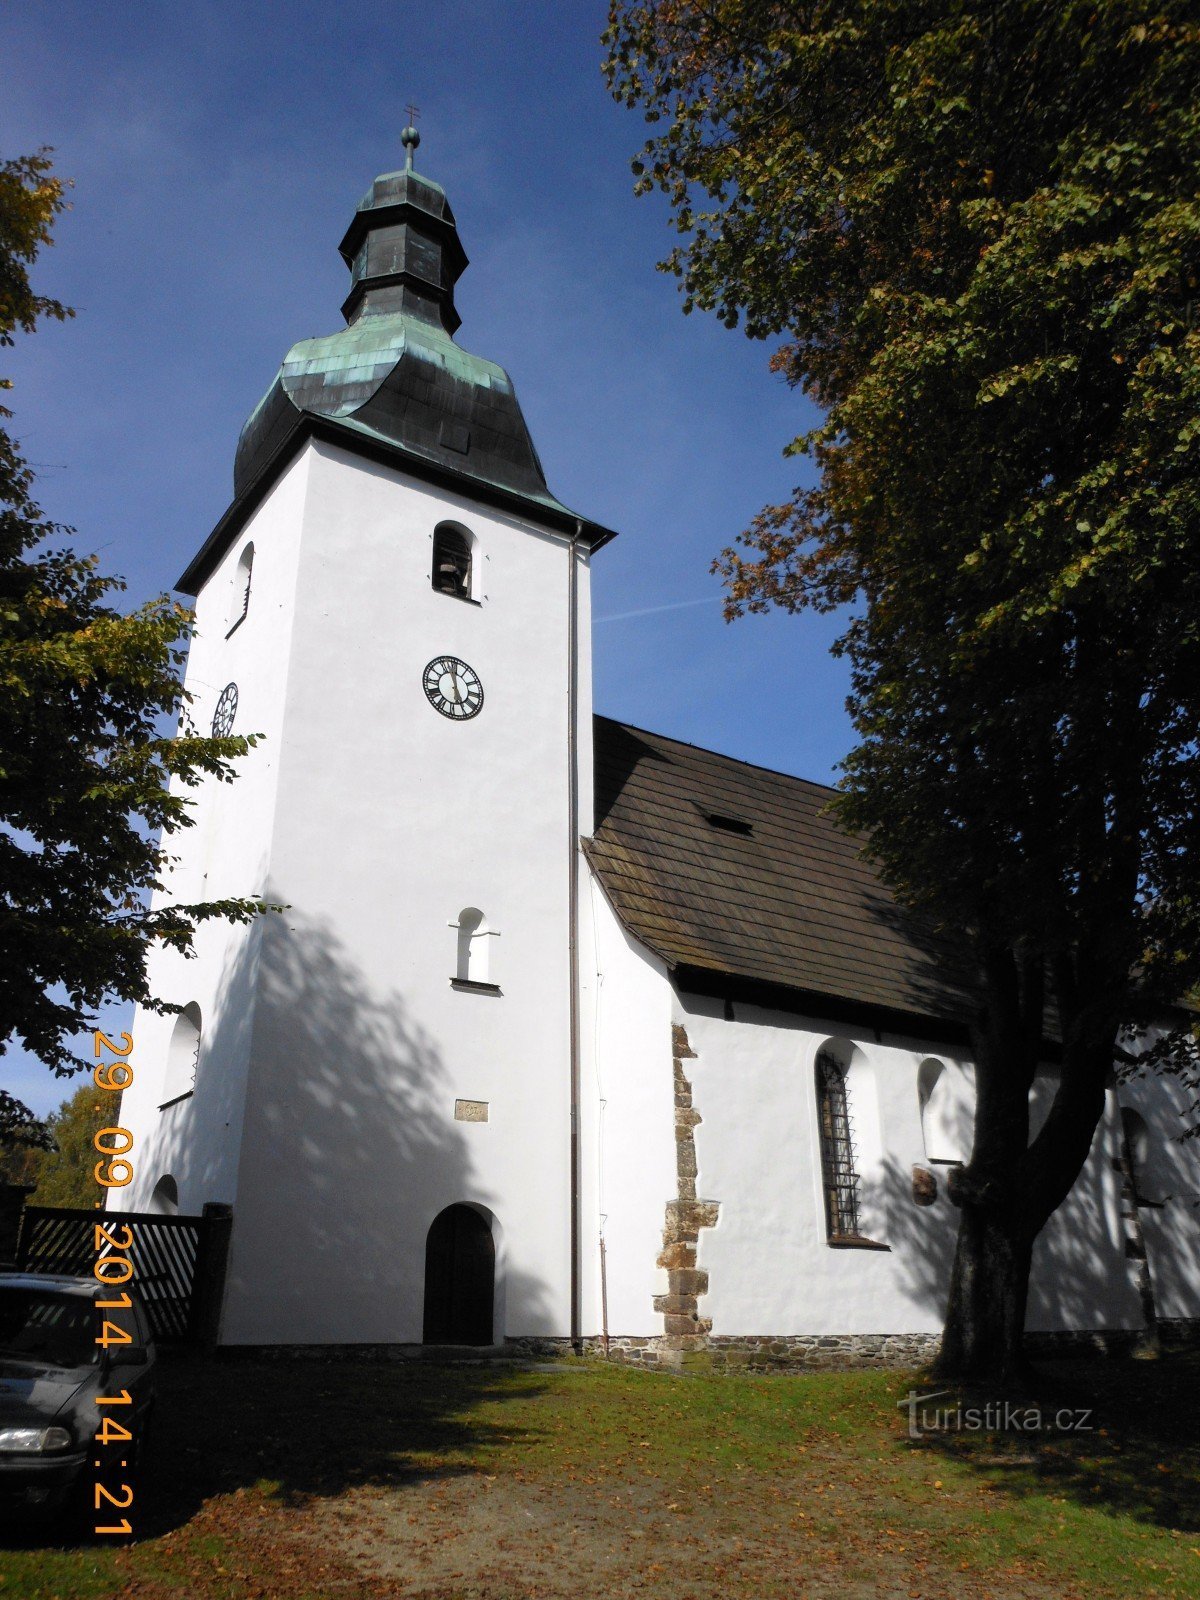 Ρωμανική εκκλησία στο Kostelní